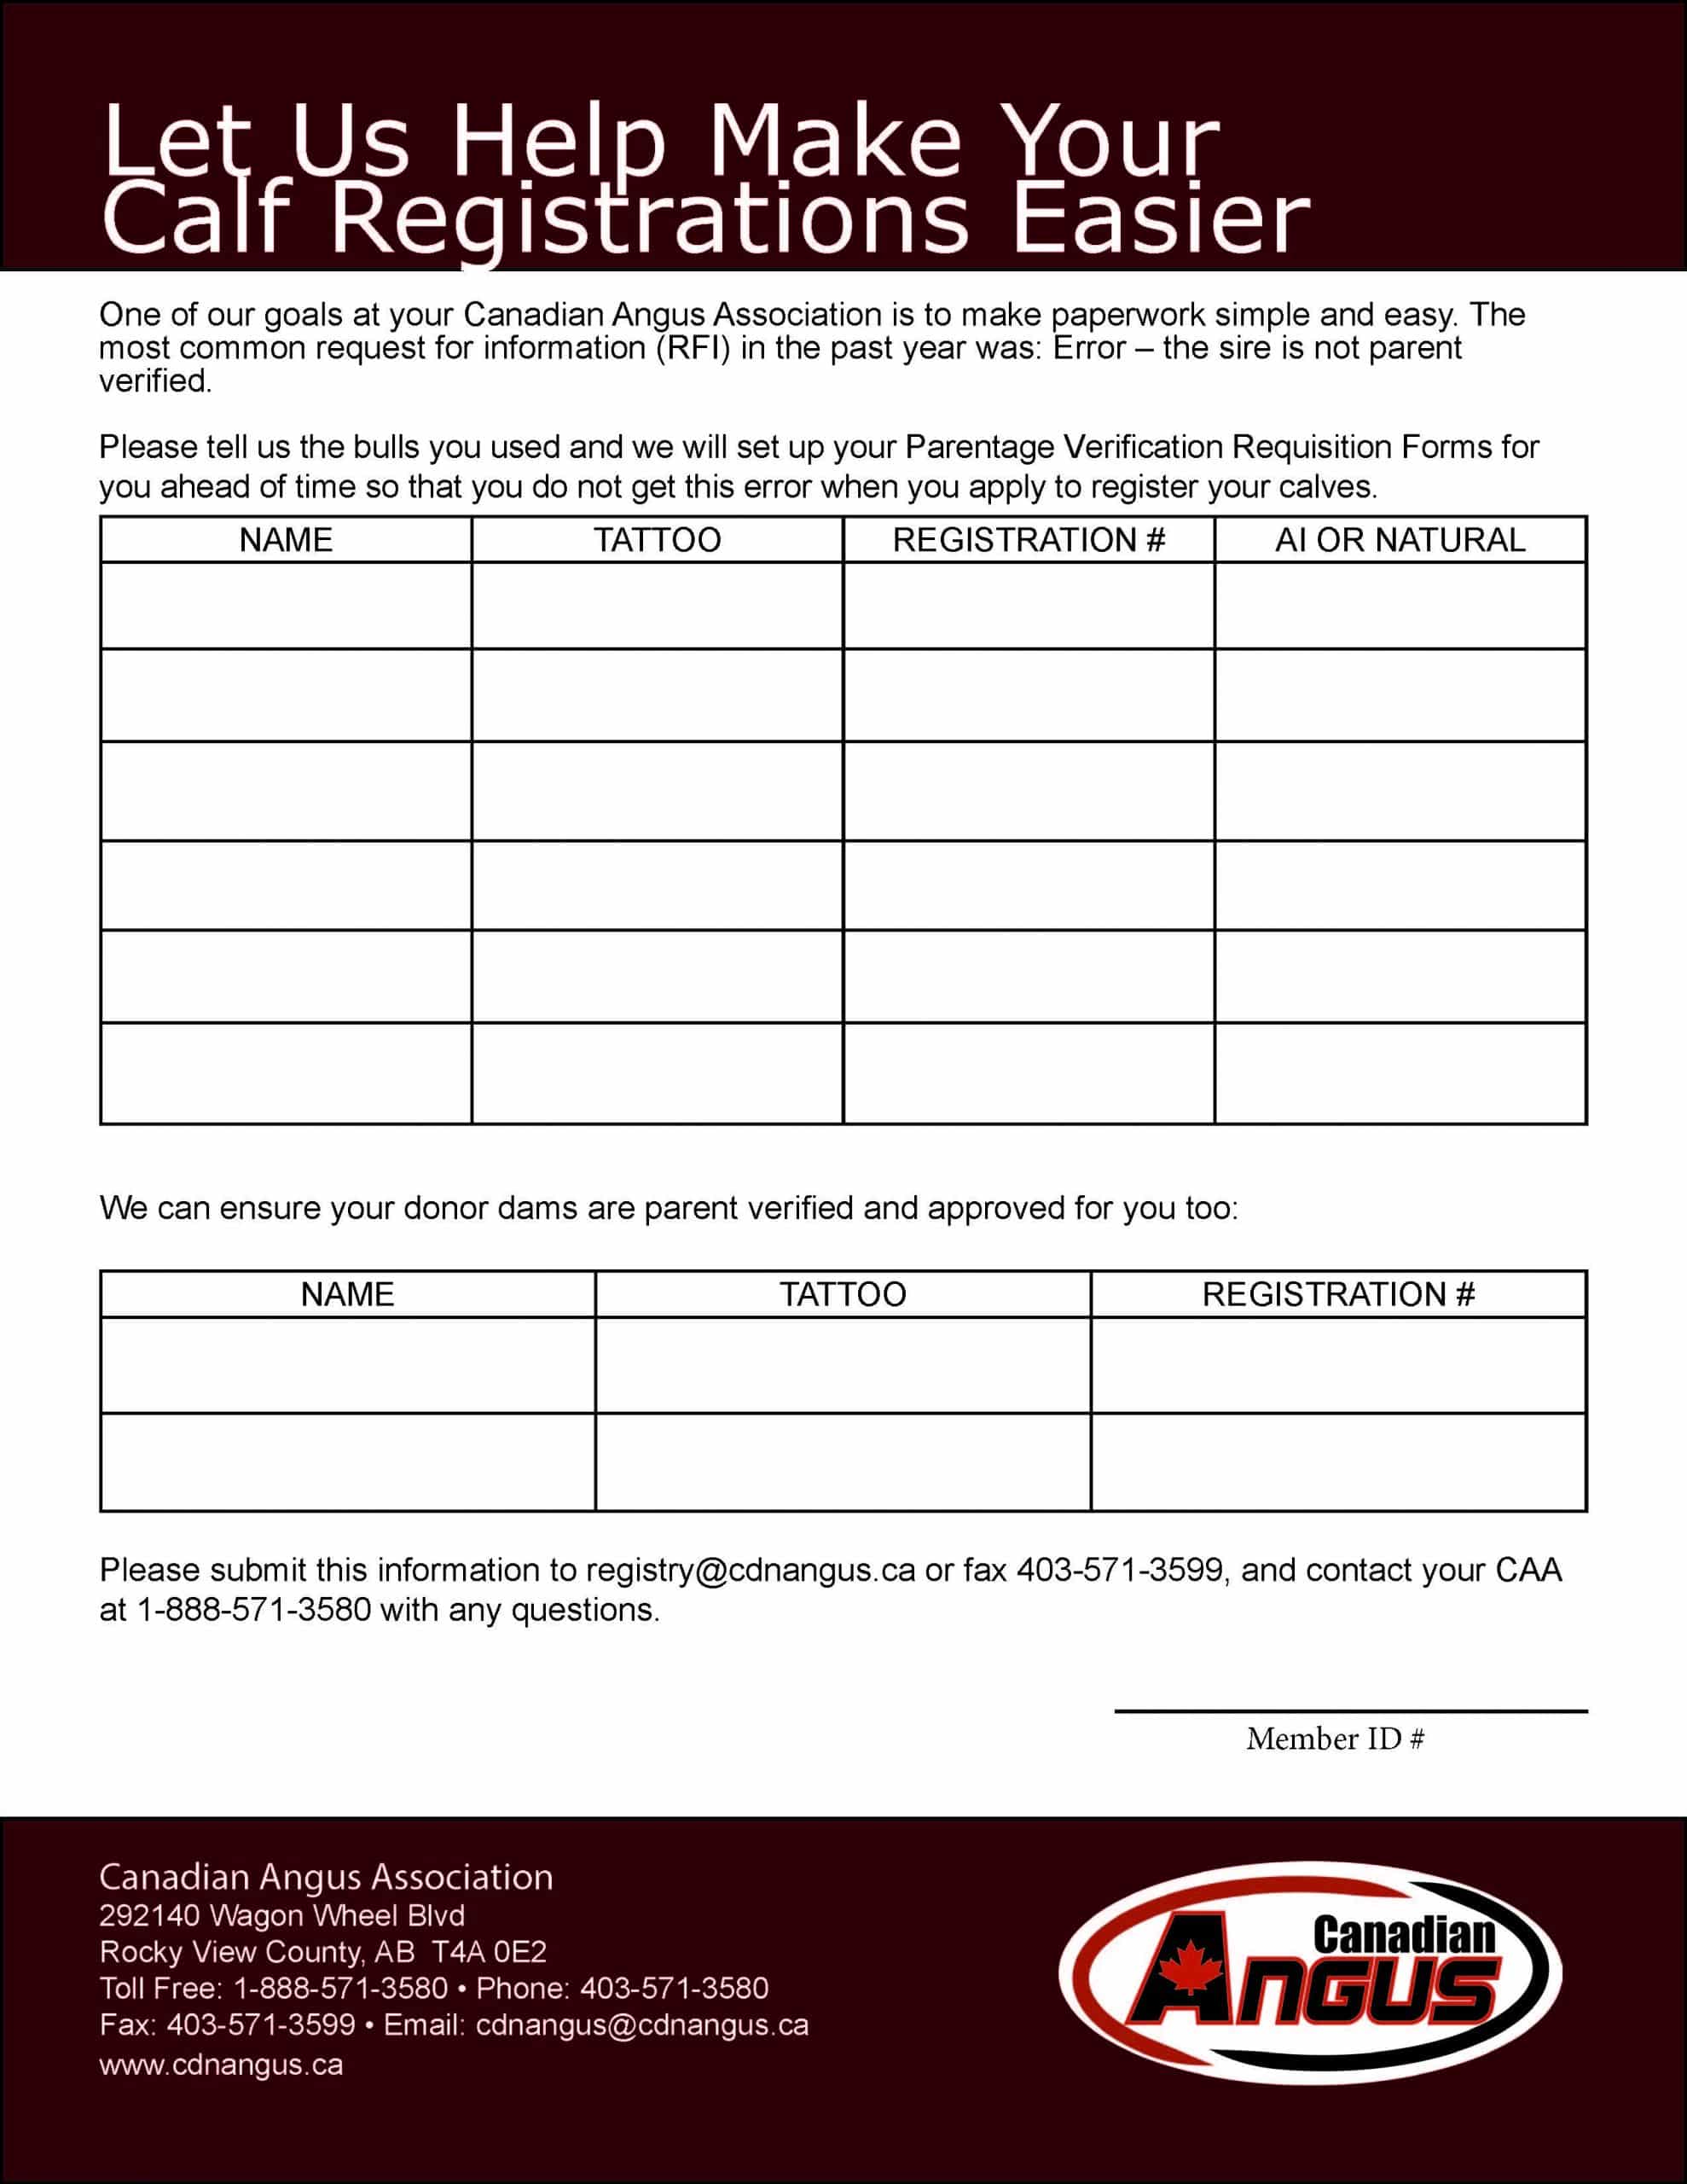 Let Us Help Make Your Calf Registrations Easier-Bull Member list